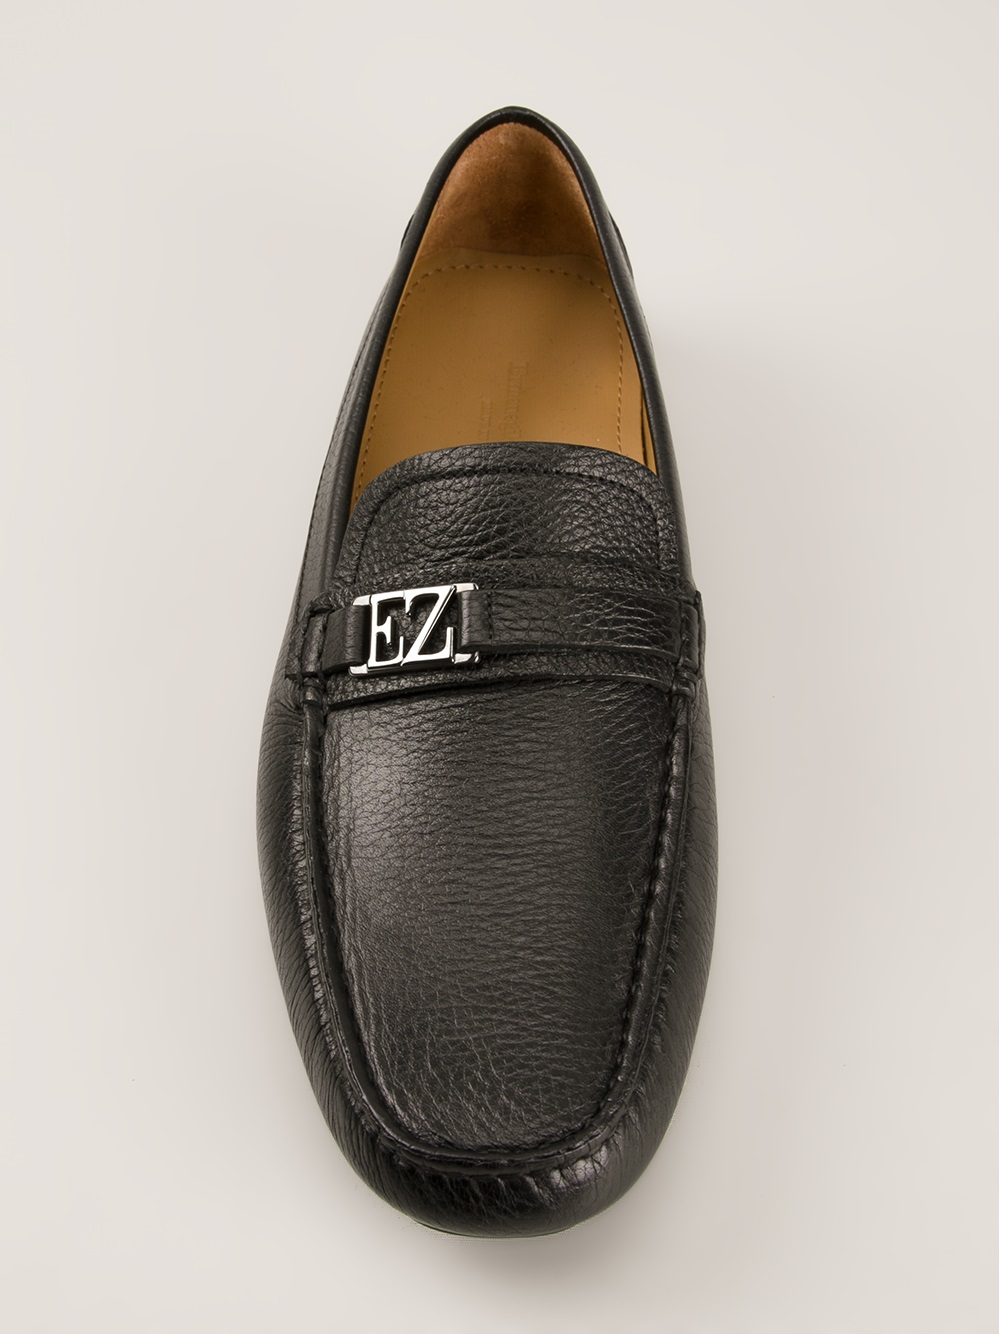 Ermenegildo Zegna Classic Loafers in Black for Men - Lyst